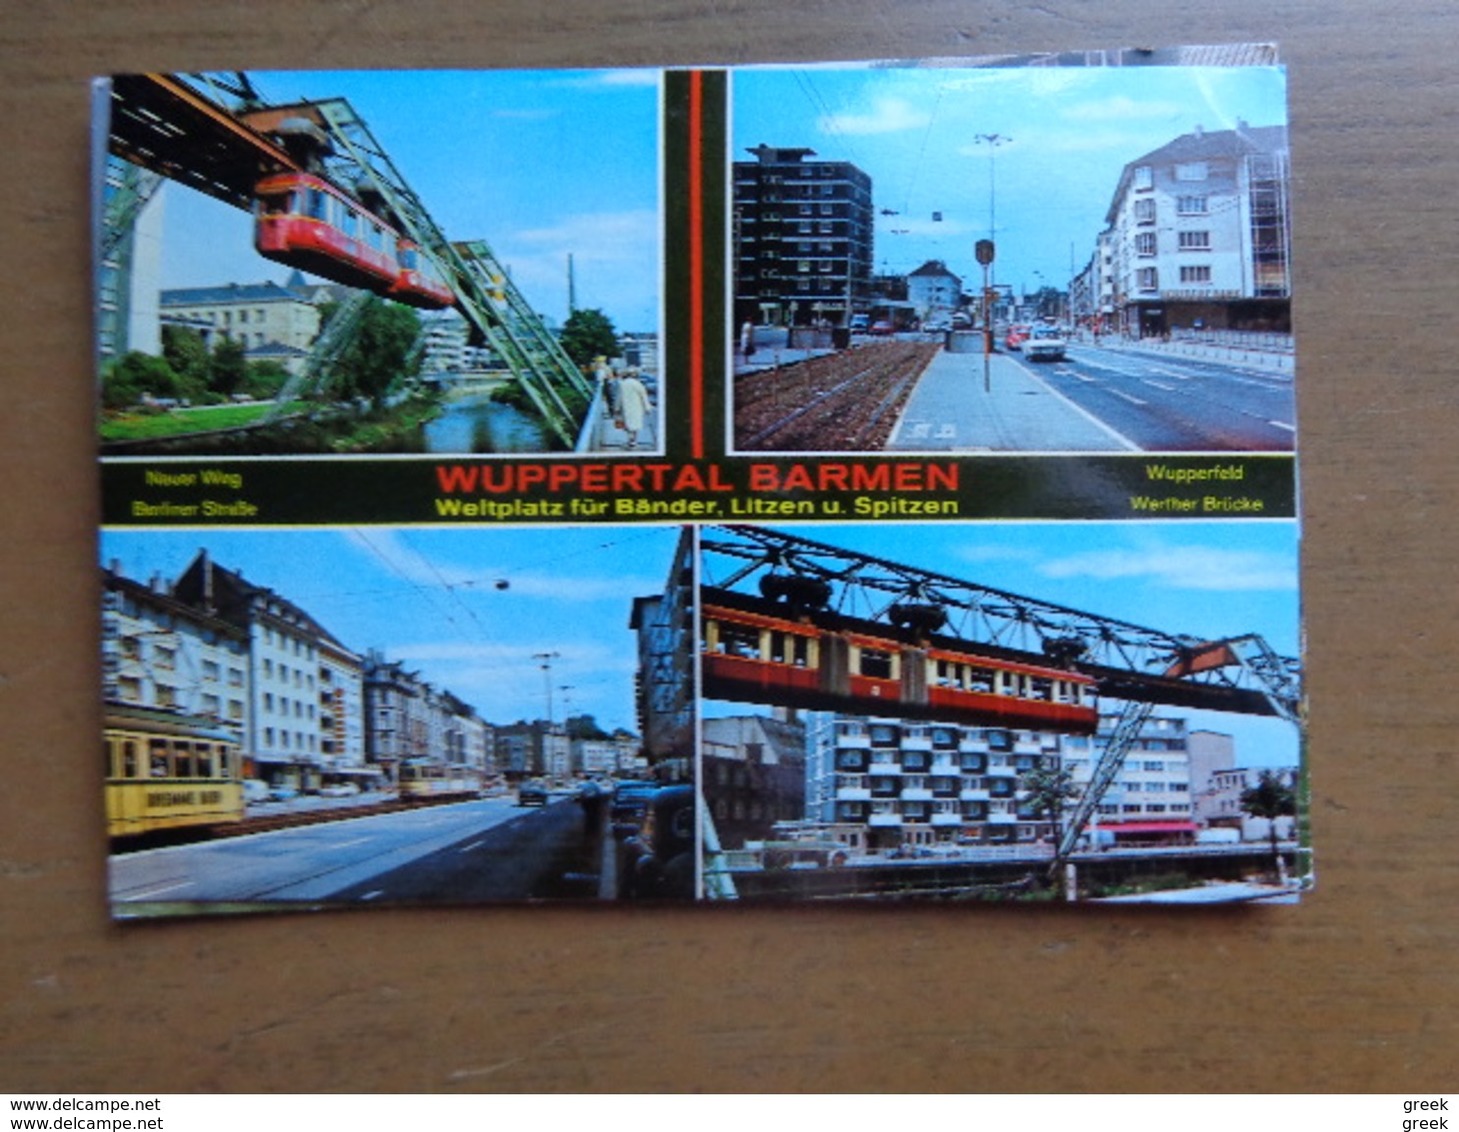 Doos postkaarten van + 5 kilo - Allerlei landen en thema's, zie enkele foto's